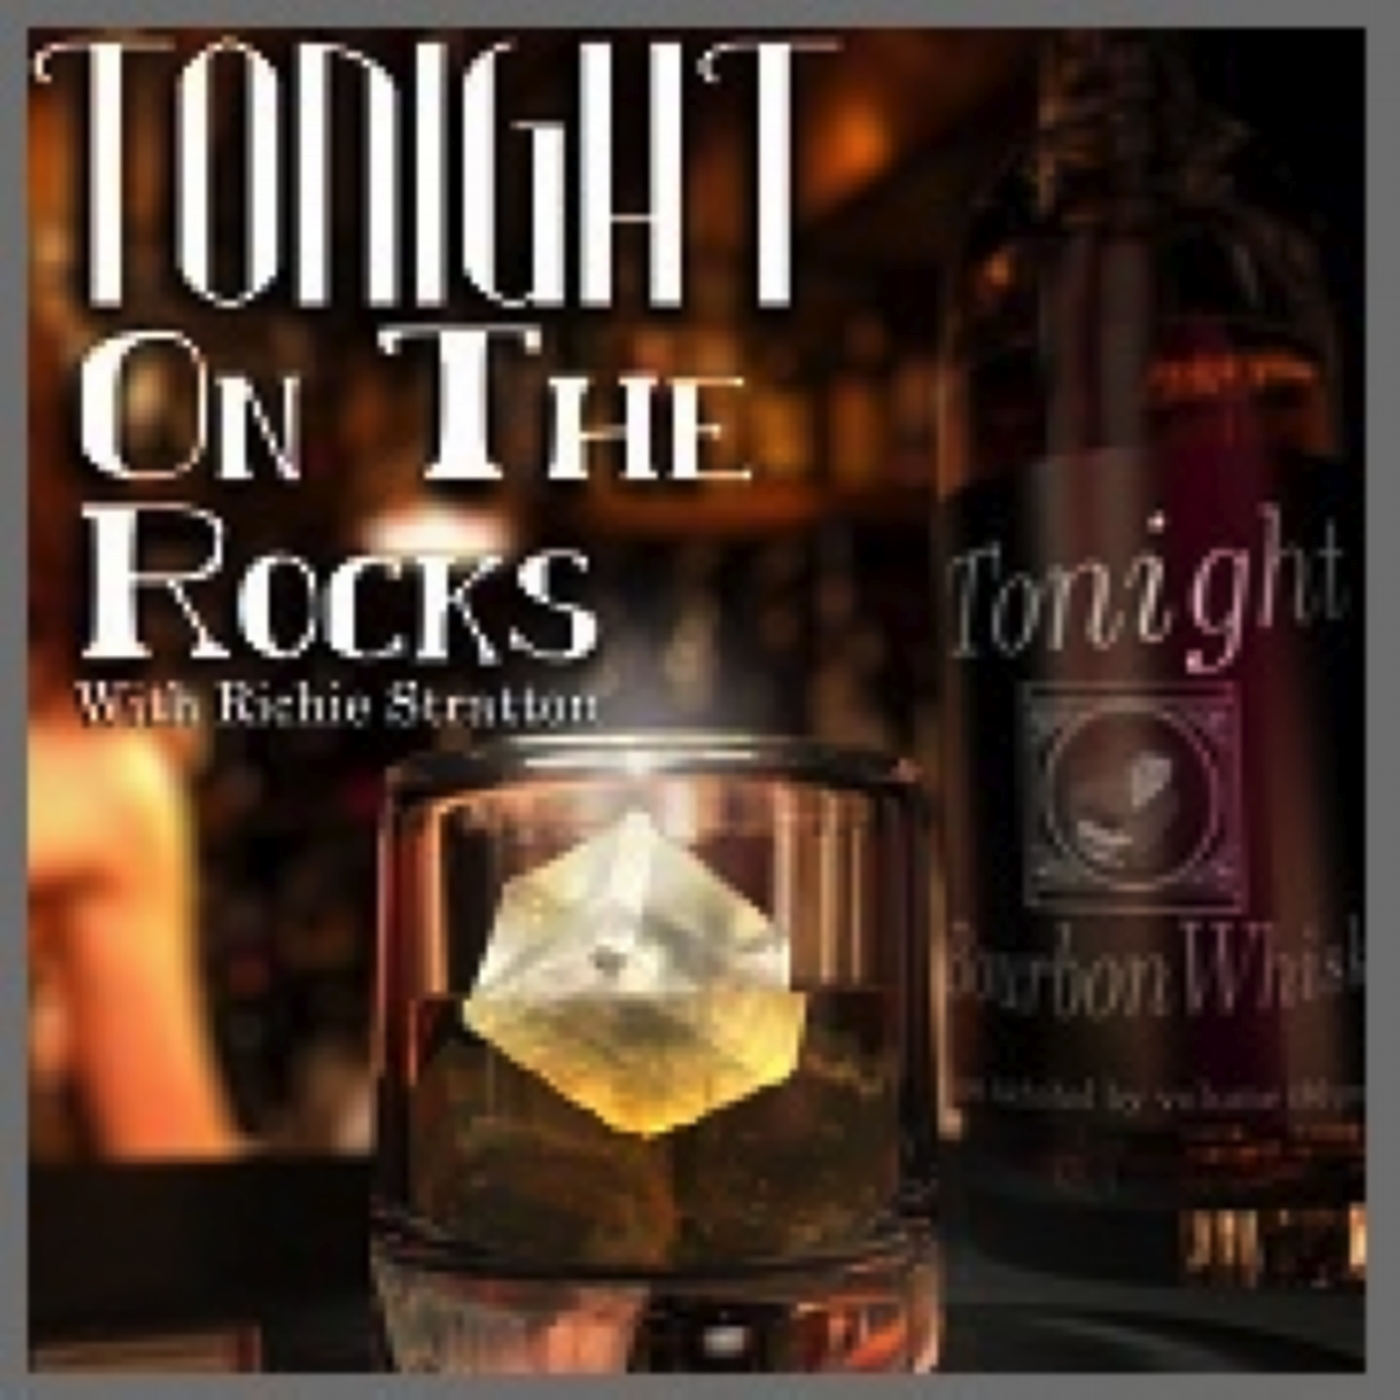 Tonight On The Rocks